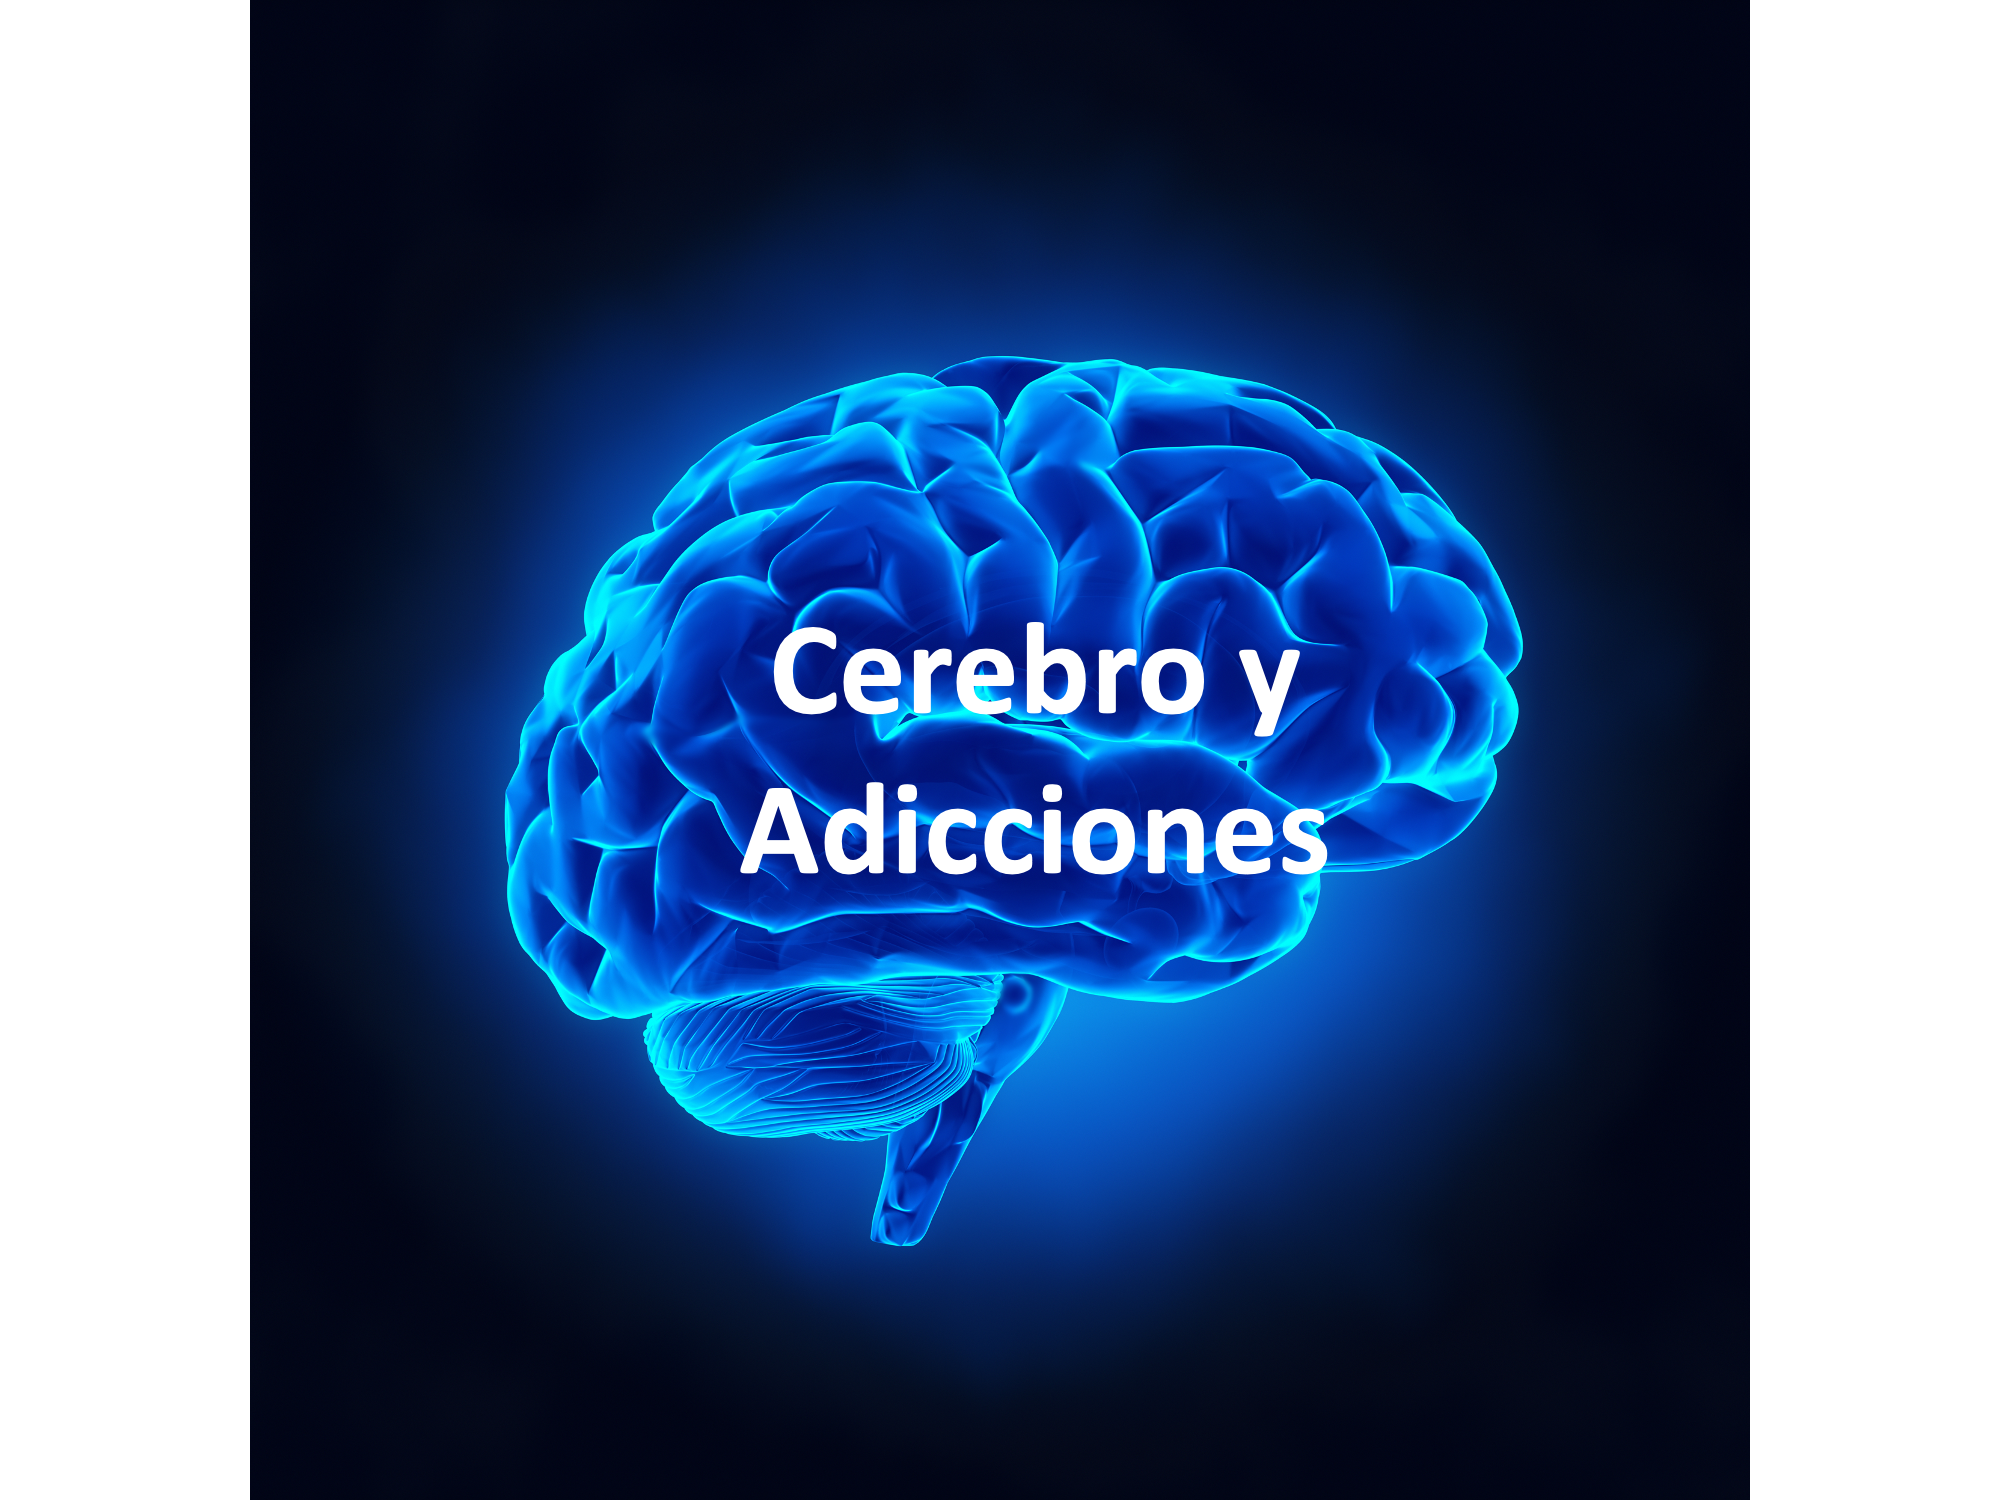 Cerebro y adicciones